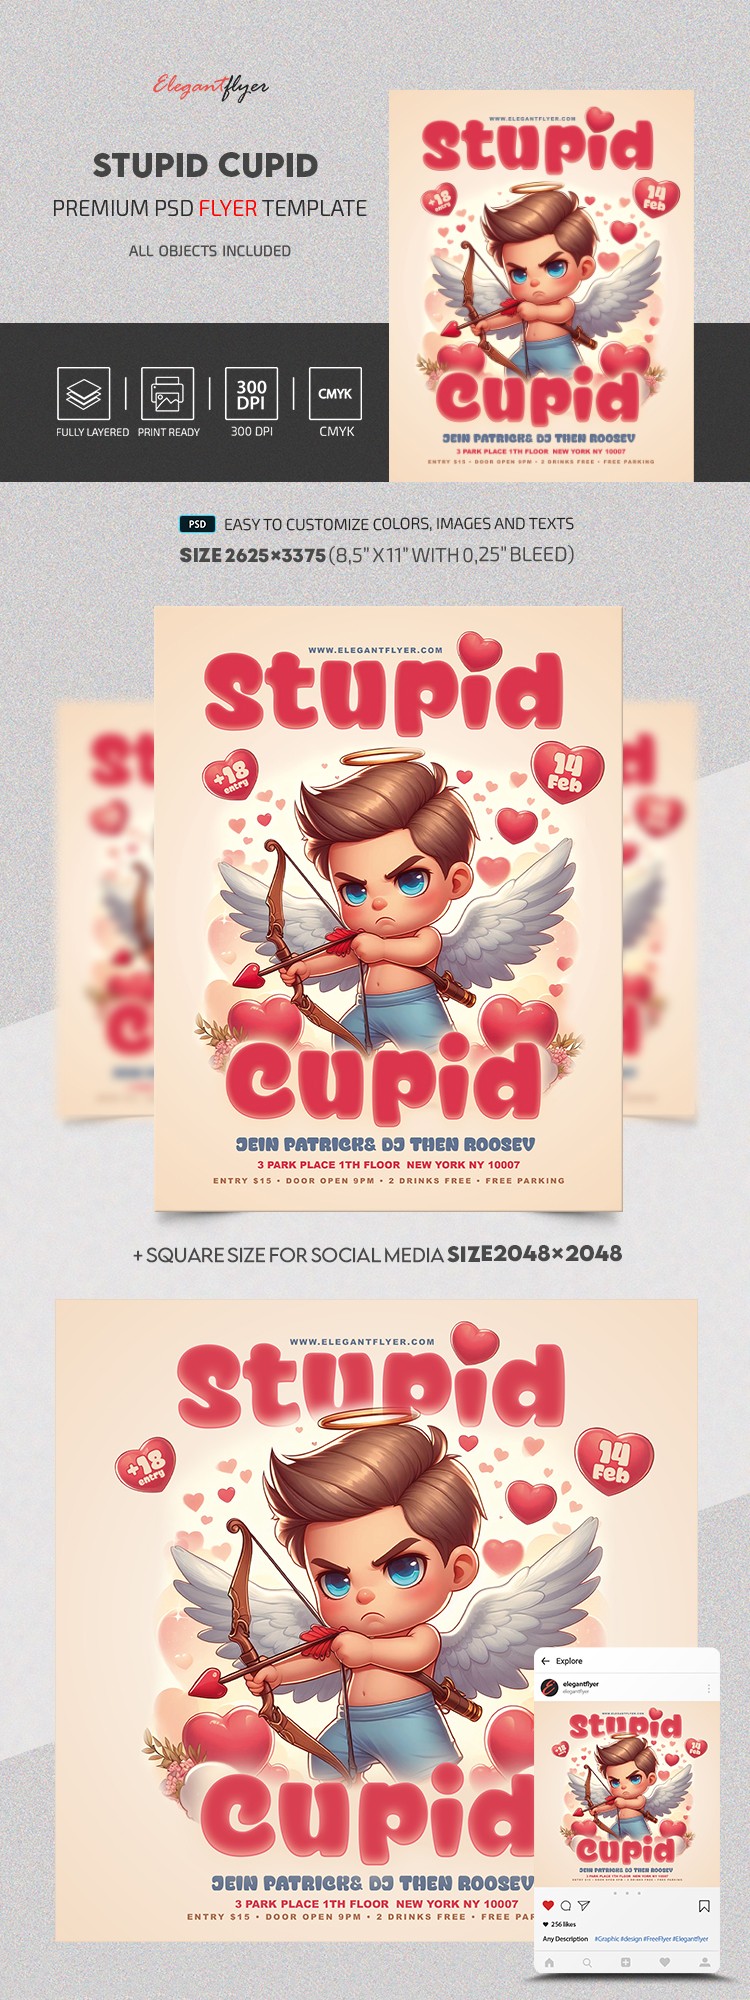 Cupido stupido by ElegantFlyer